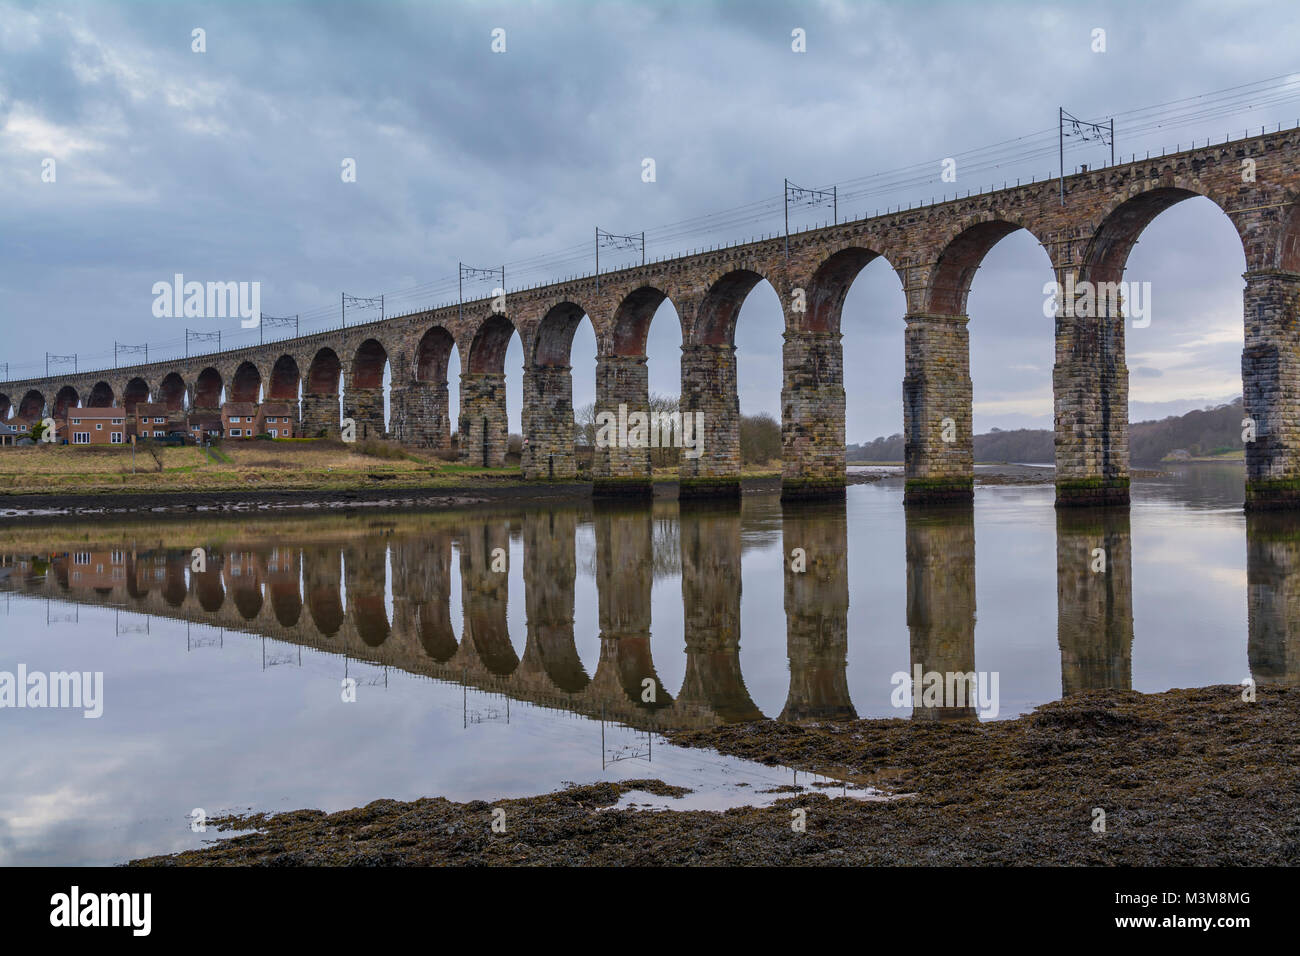 Berwick-upon-Tweed Viaduct, Northumberland, England Stock Photo